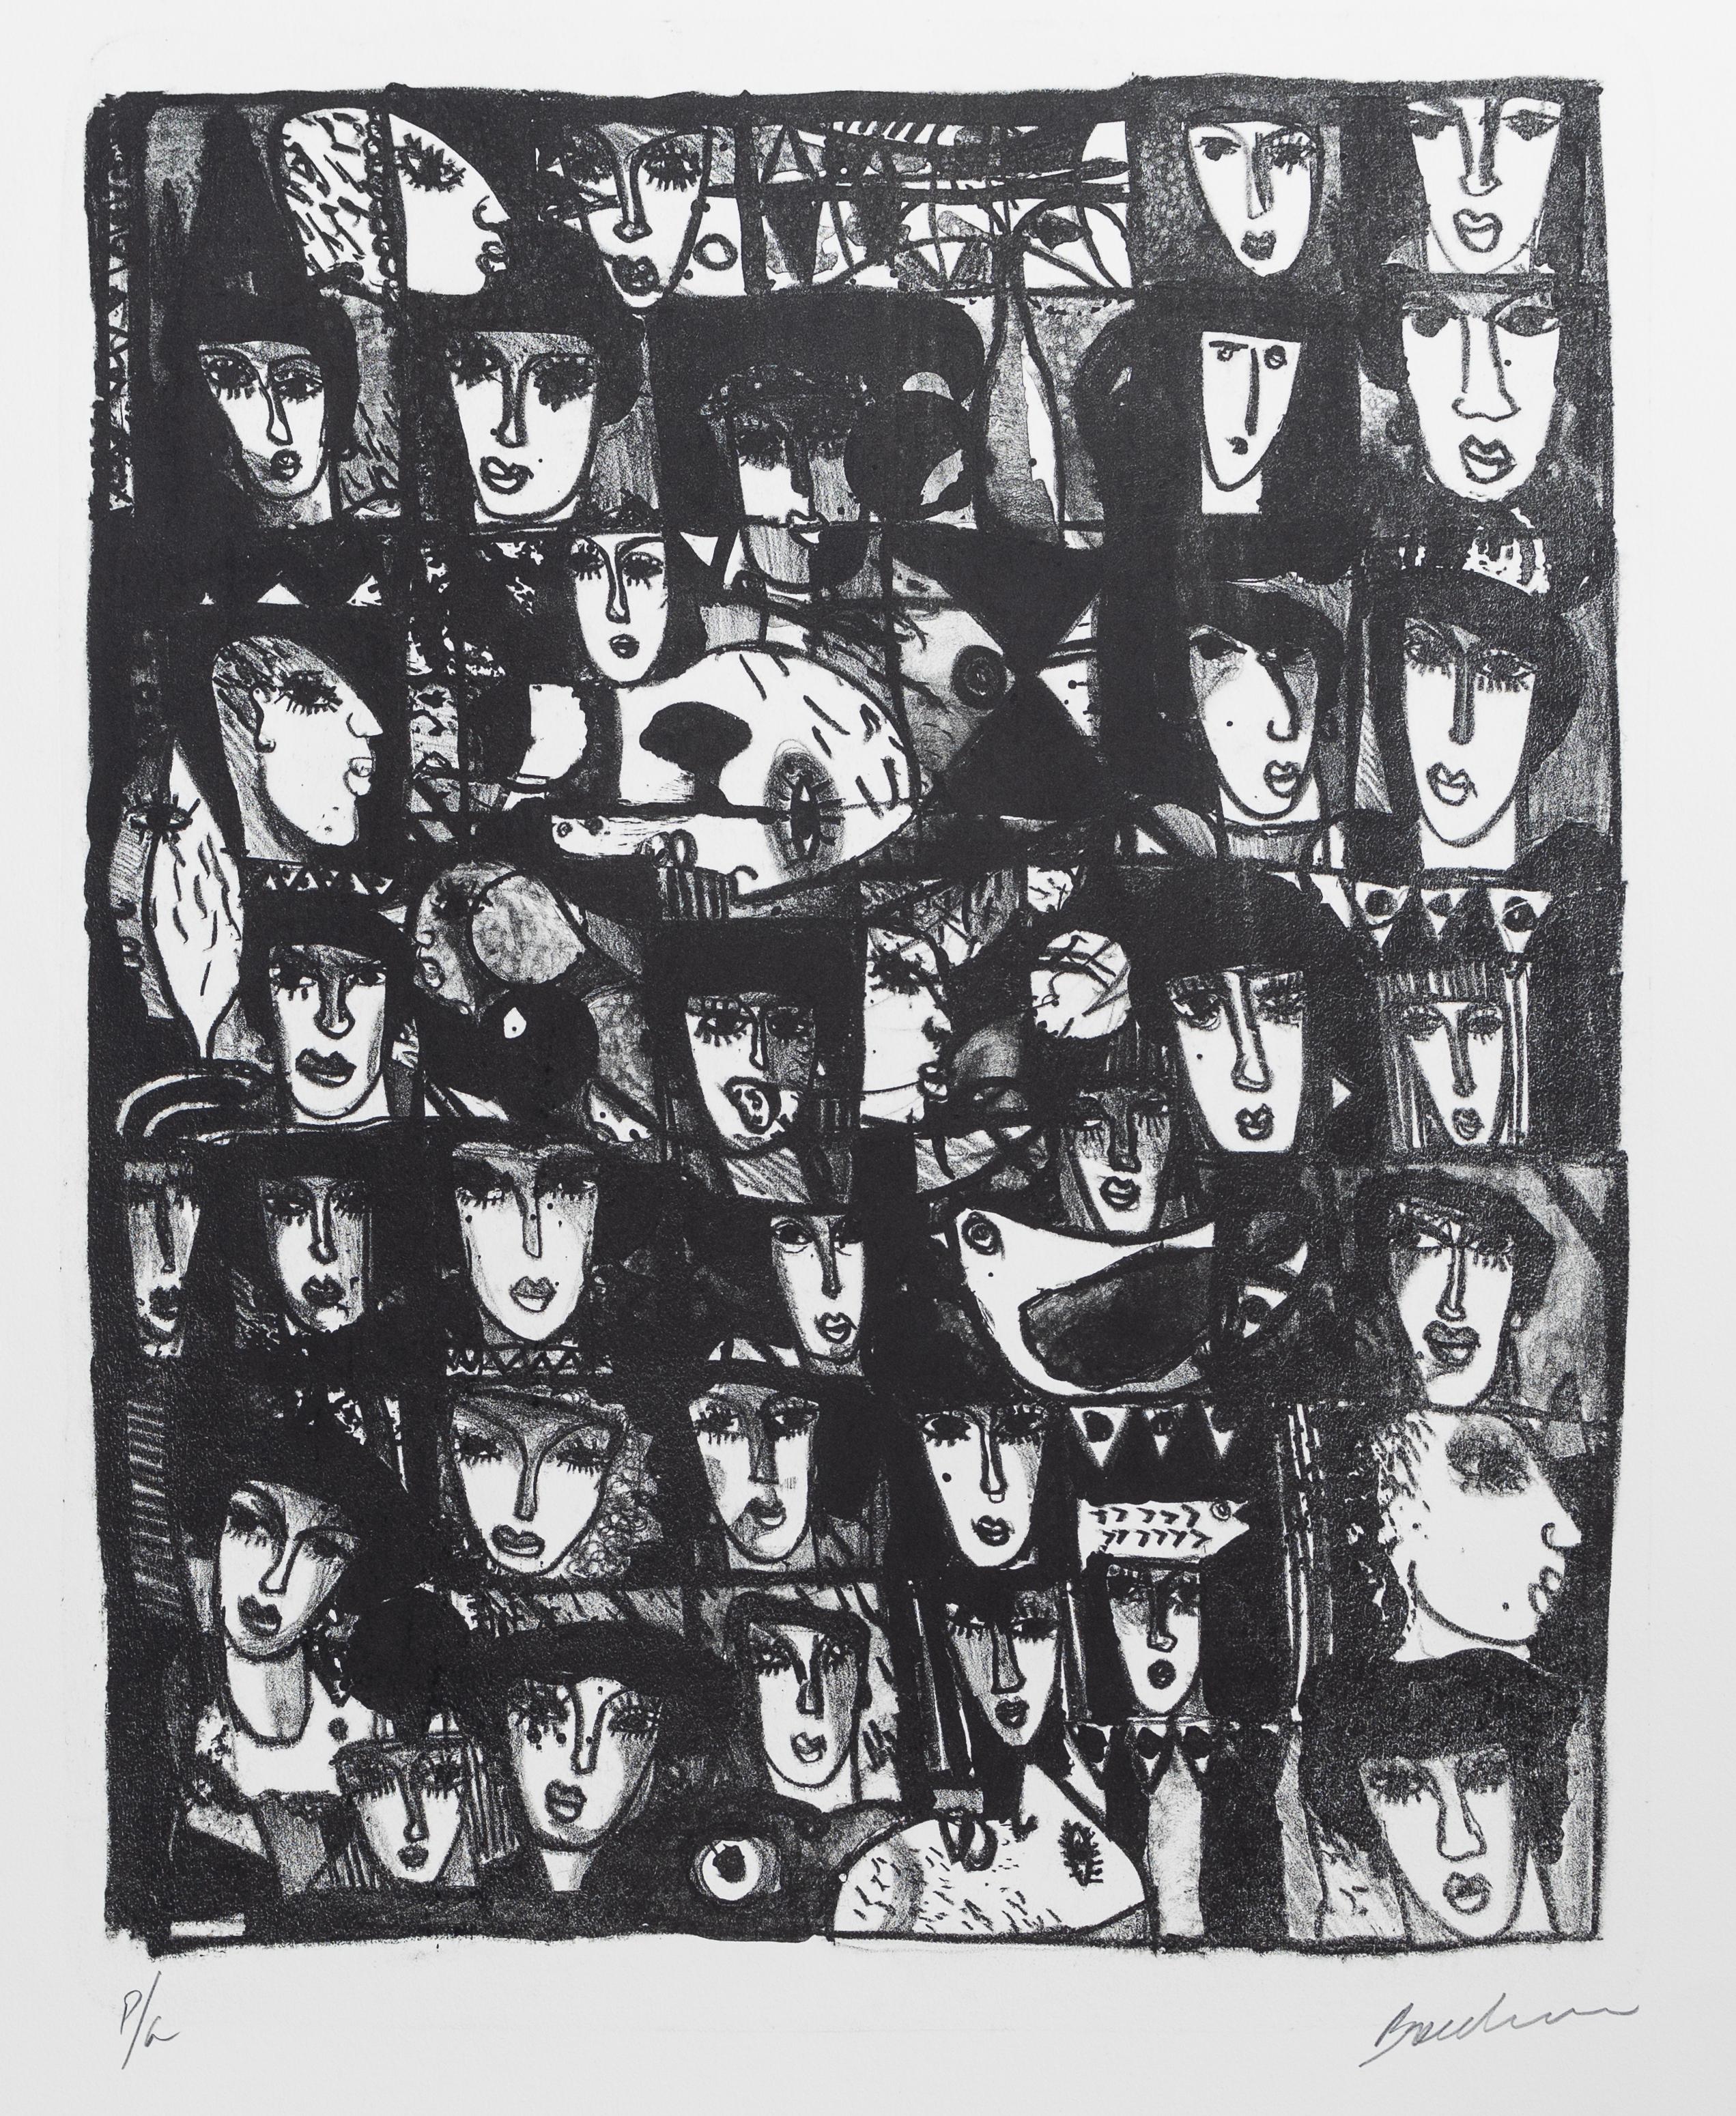 Juan Carlos Breceda Figurative Print - Faces, Black and White - Figurative Portrait